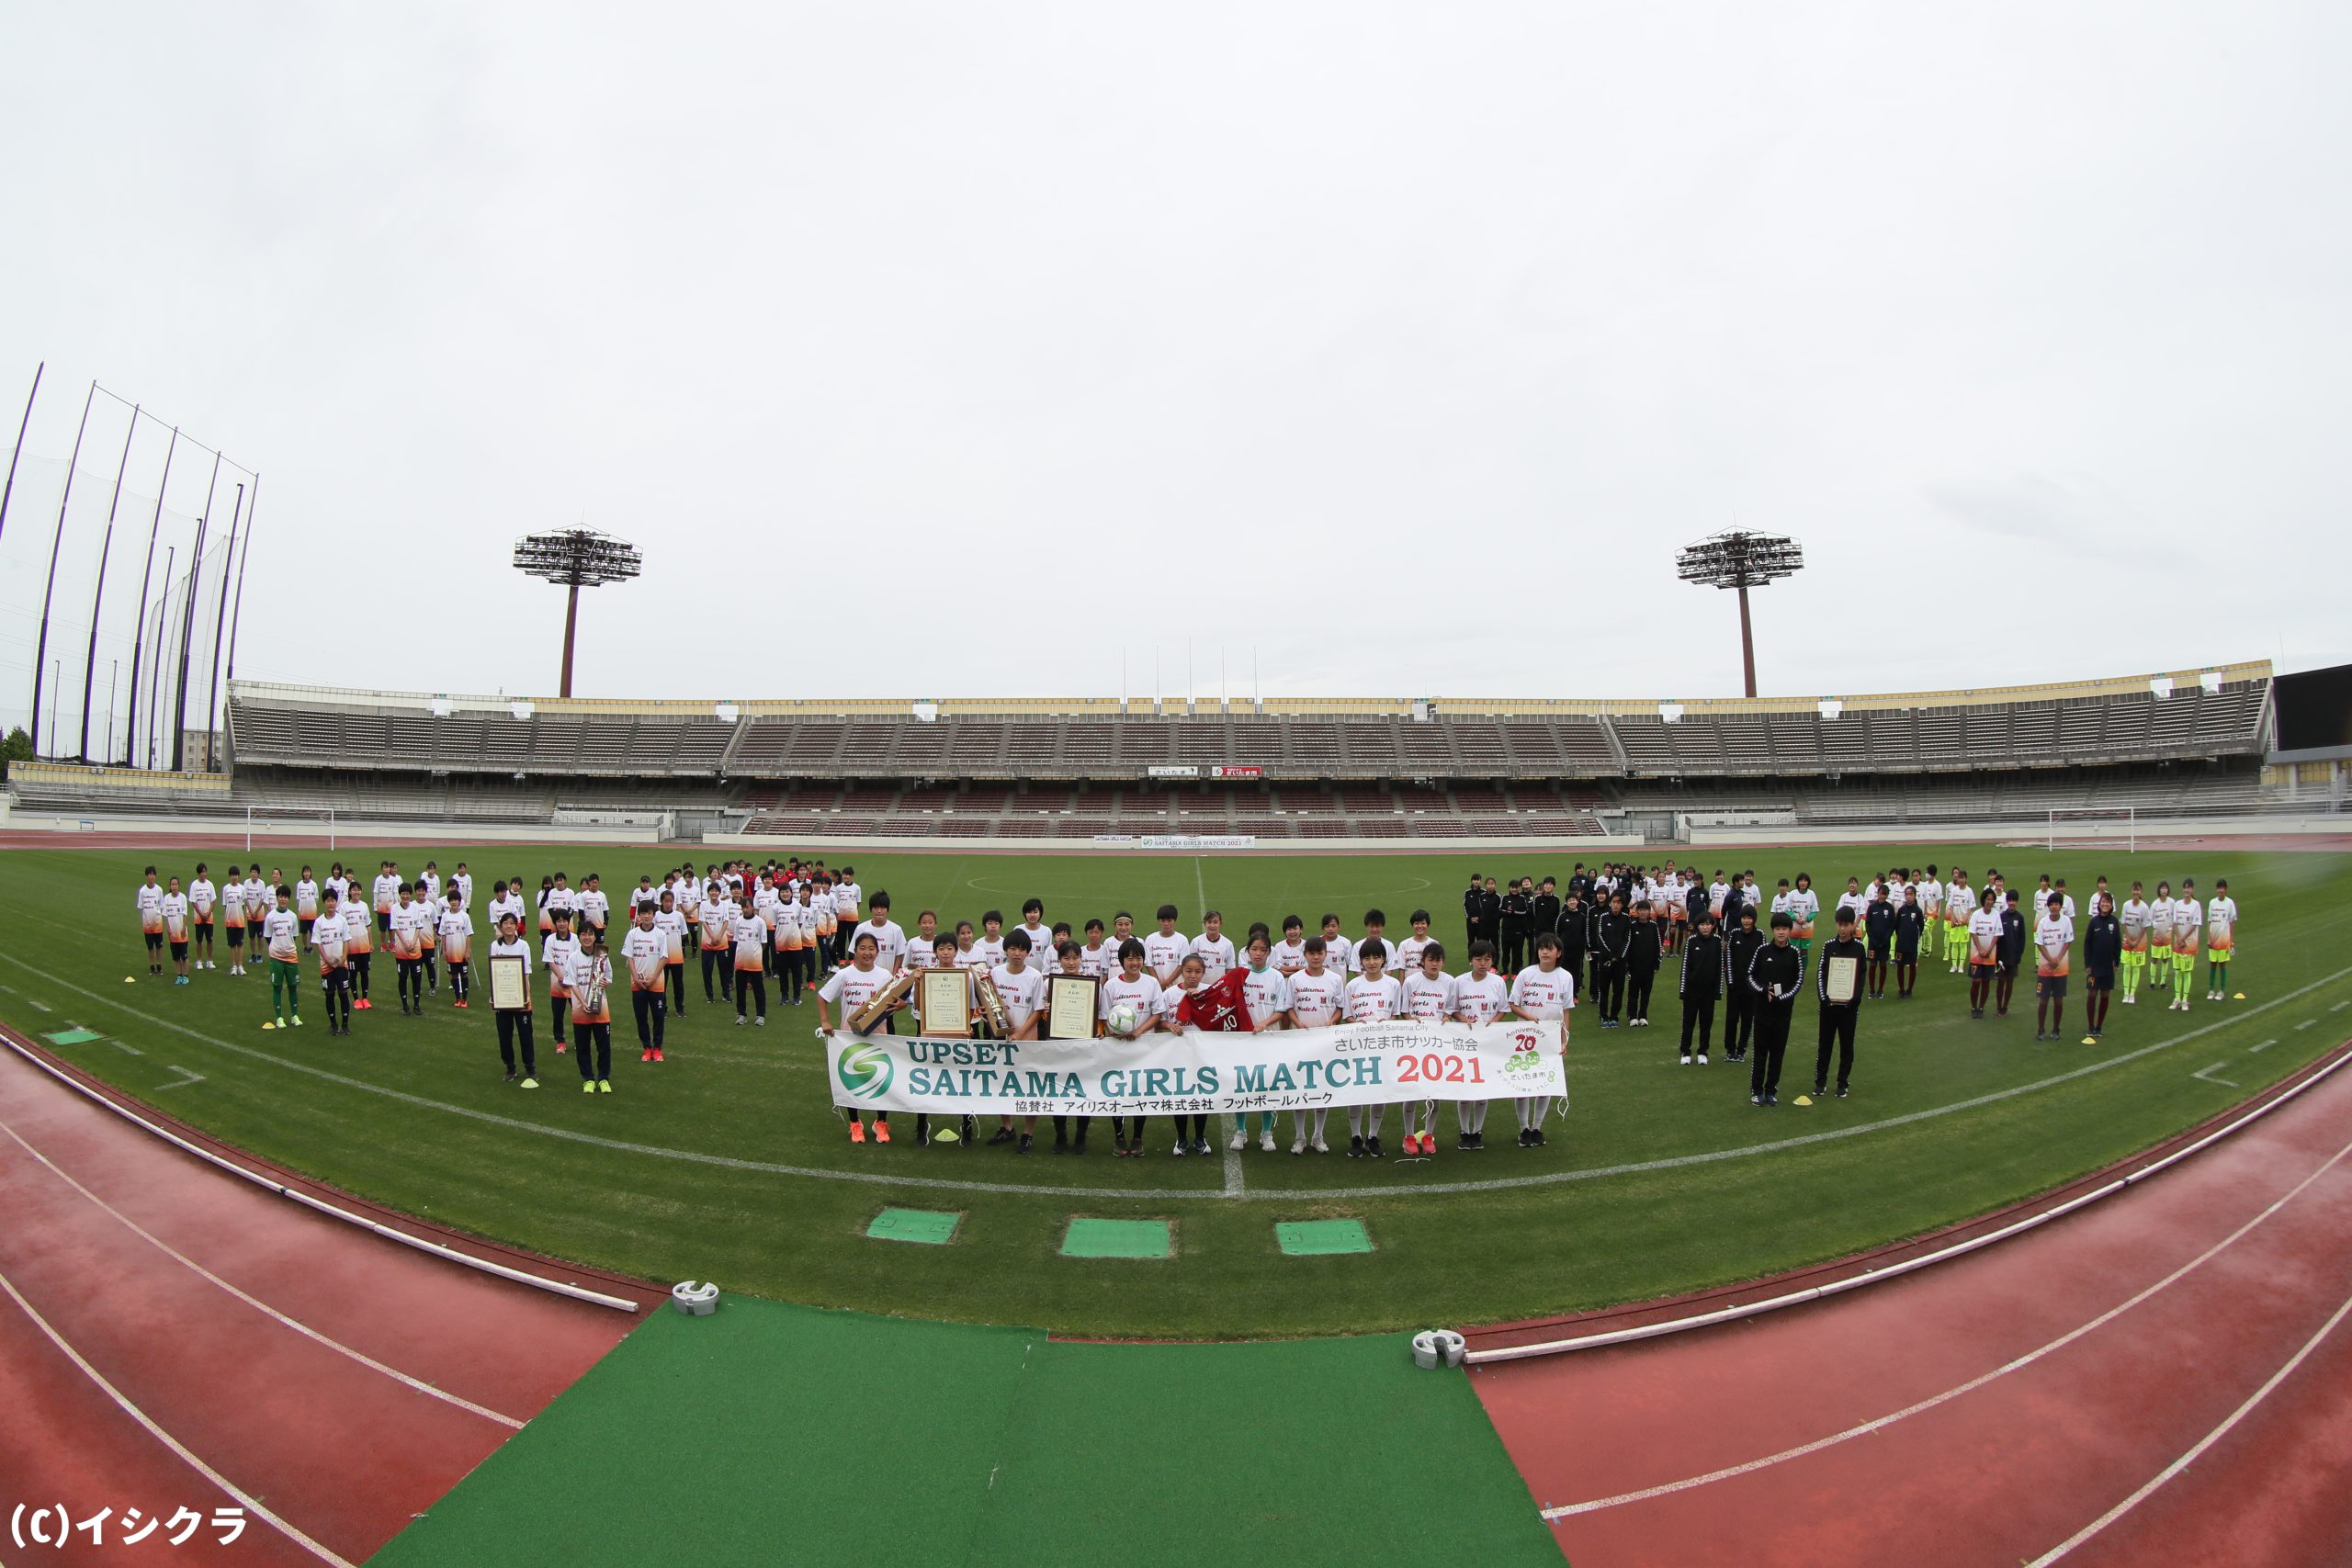 さいたま市から女子サッカーをさらに盛り上げる Saitama Girls Matchに込められた想い 埼玉サッカー通信 埼玉サッカー を応援するwebマガジン